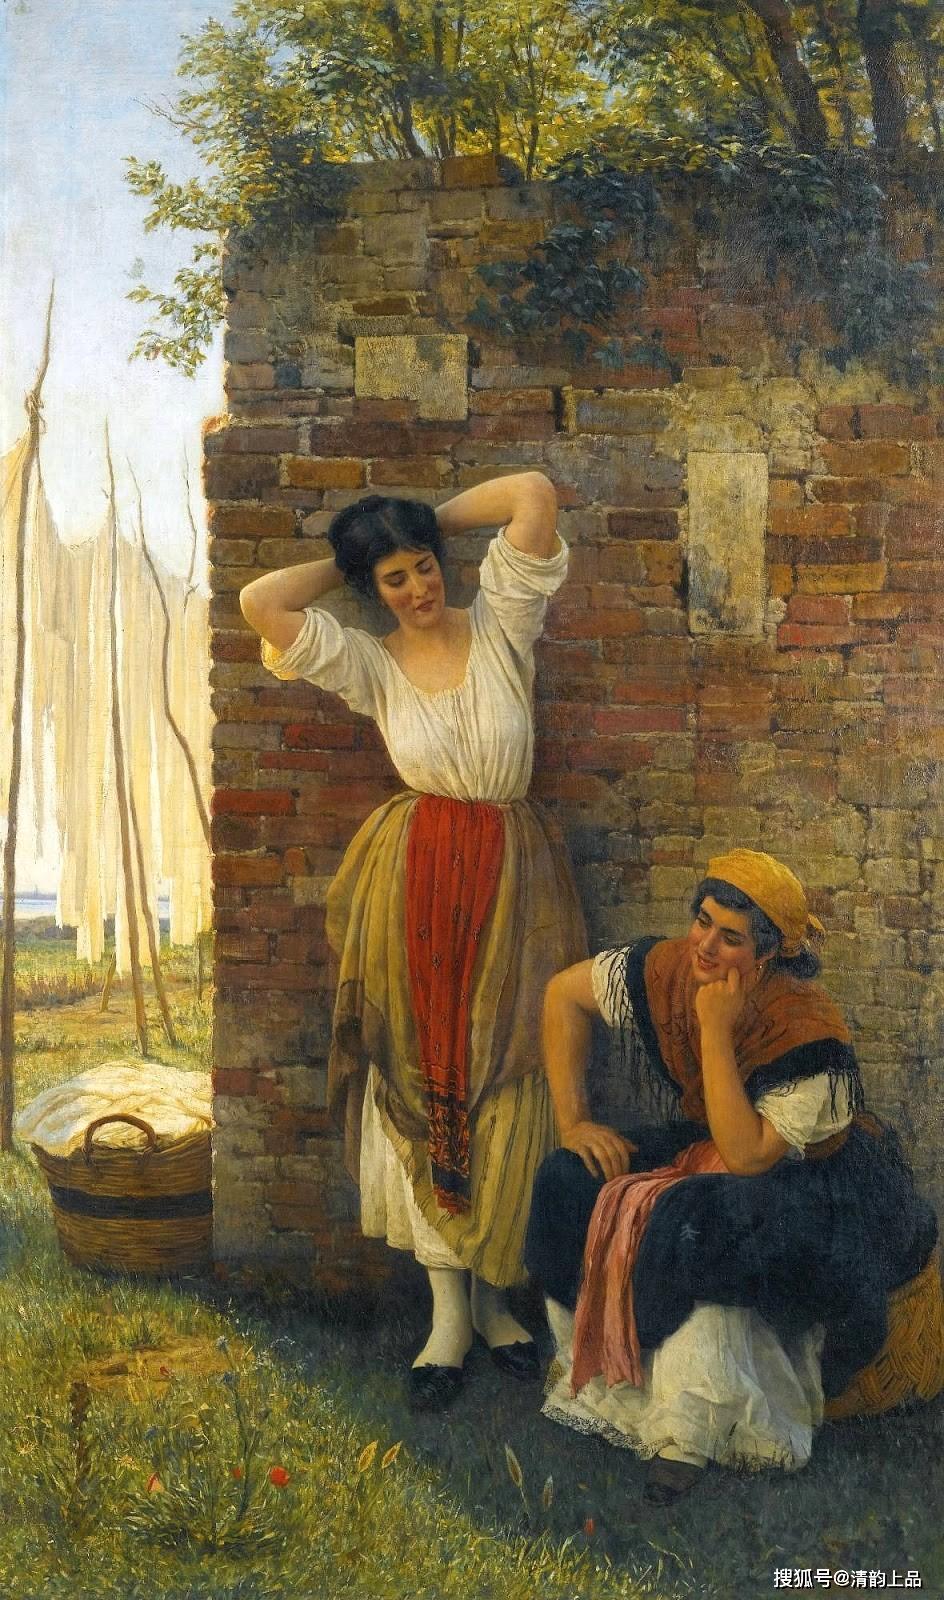 意大利画家尤金布拉斯19世纪末欧洲平民阶层人物油画欣赏